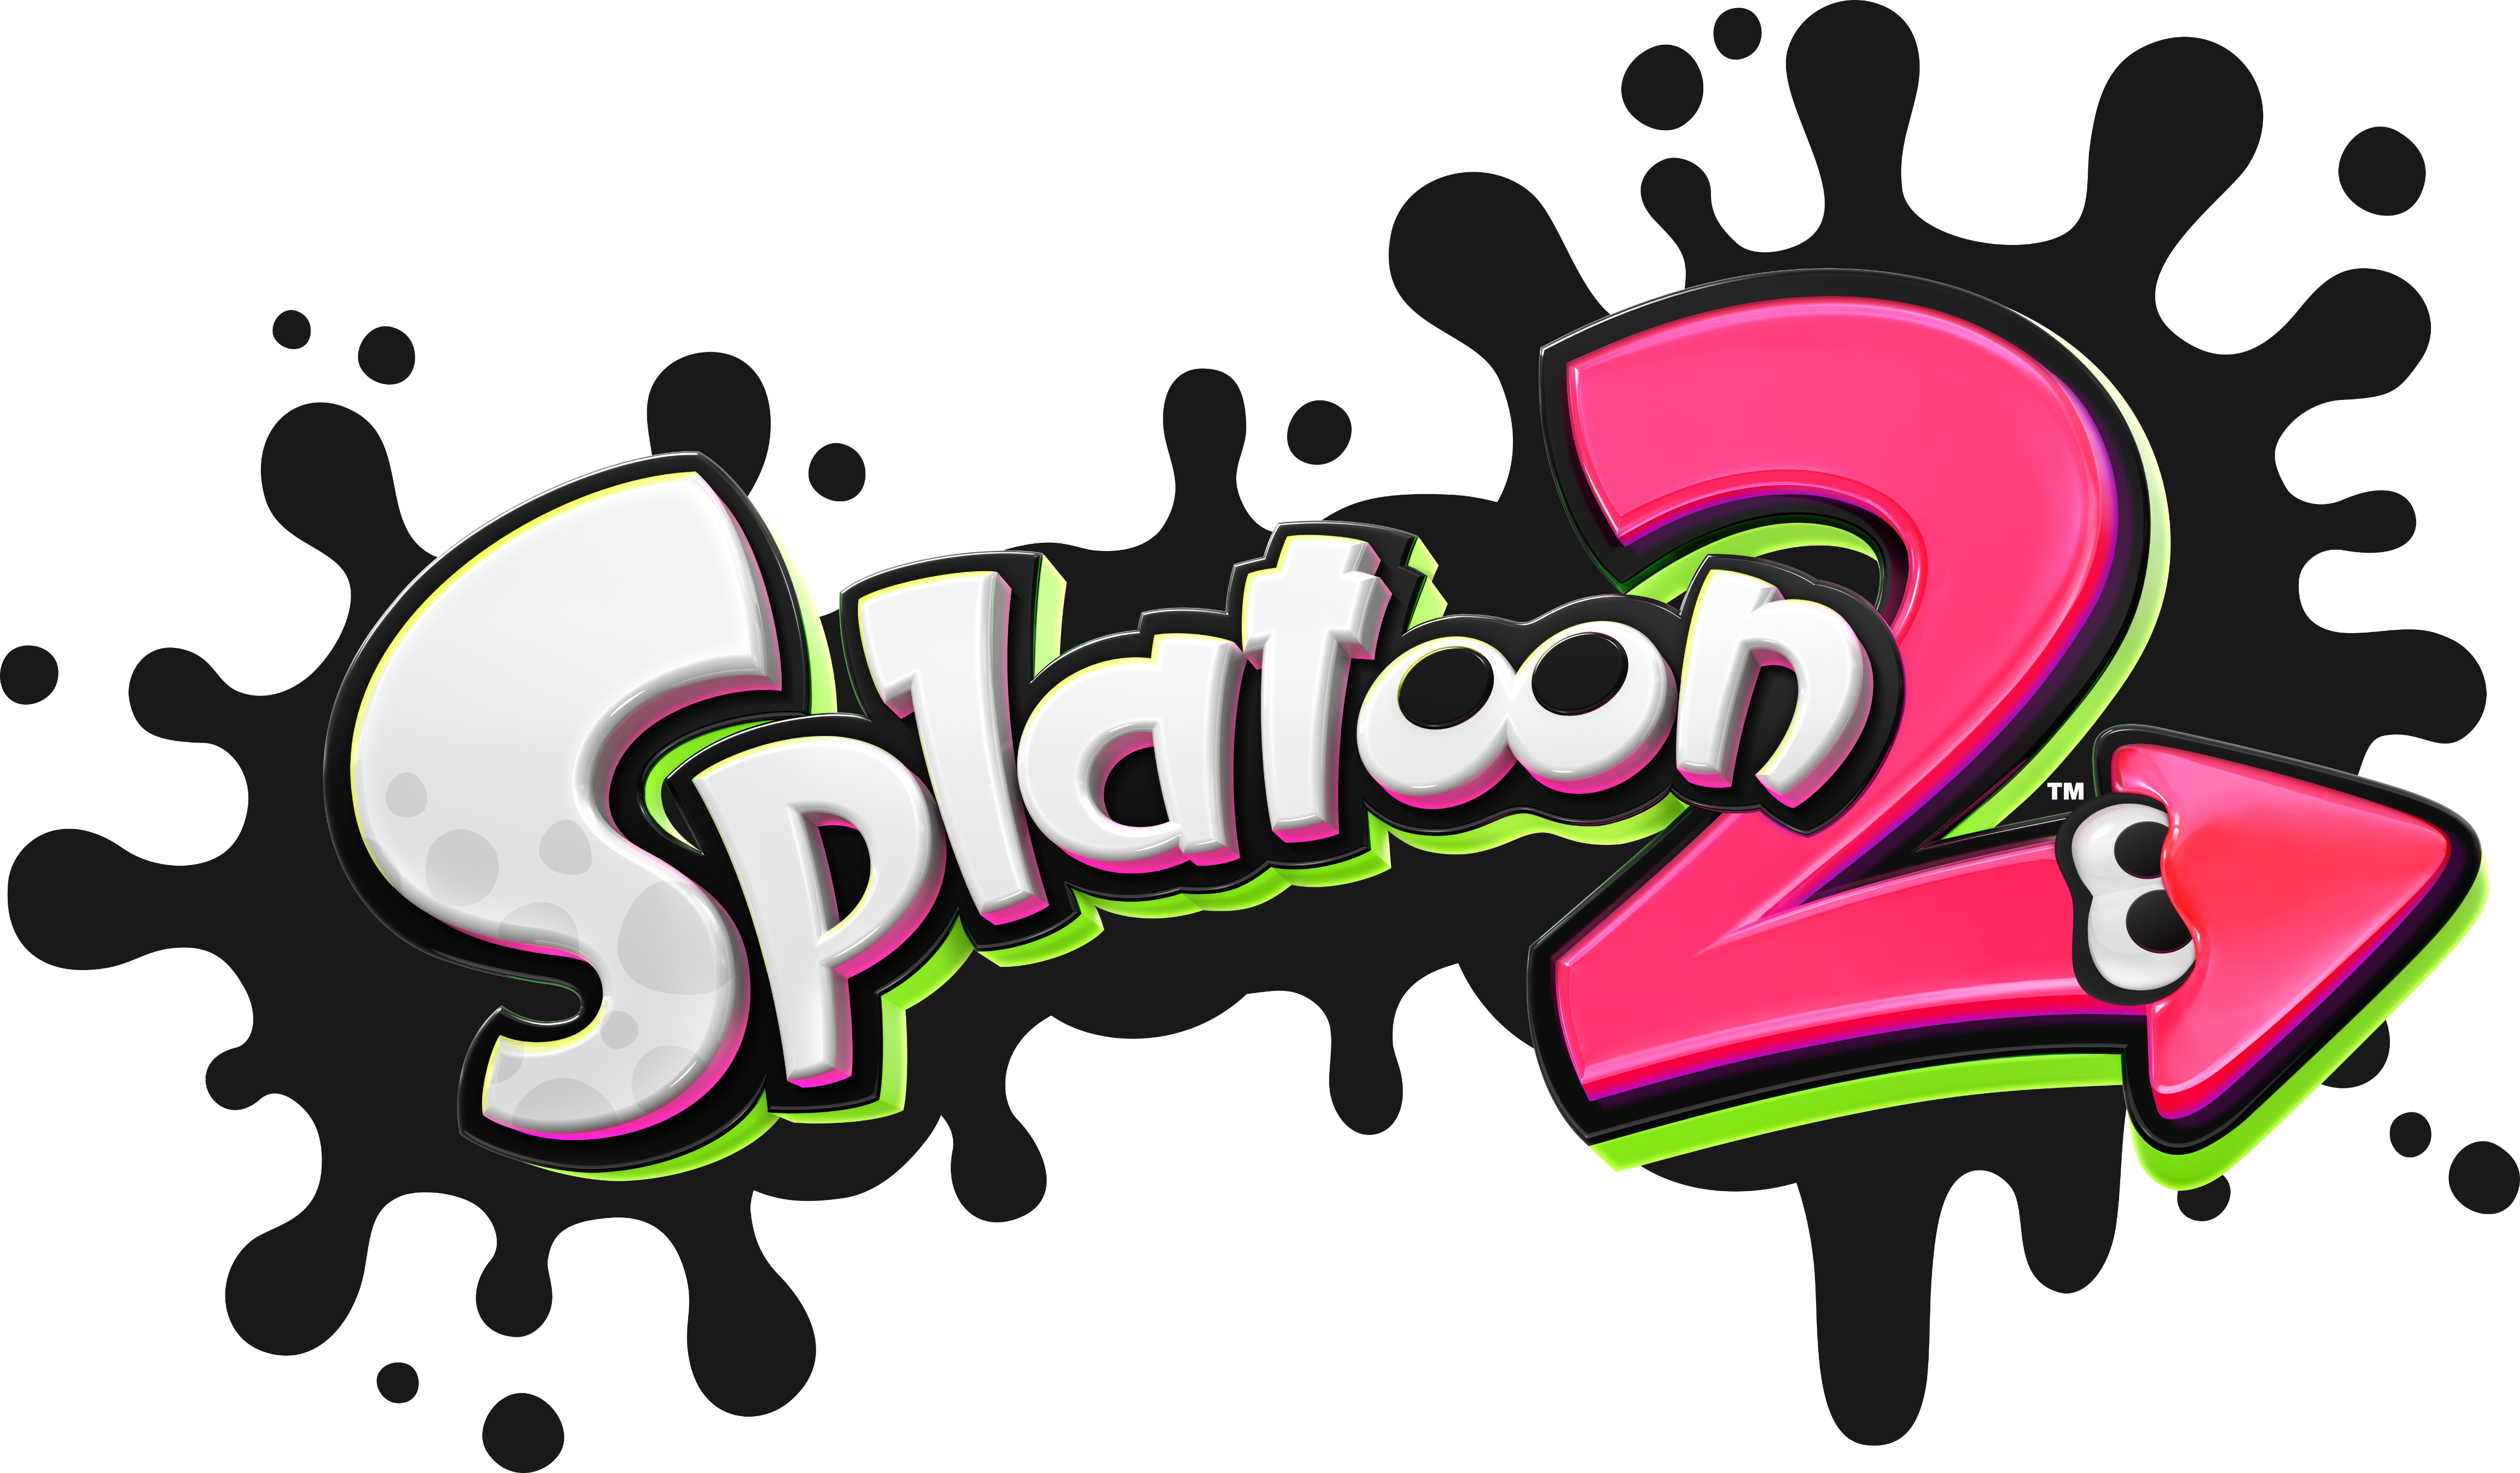 Splatoon 2. Splatoon 2 logo ink.png. 